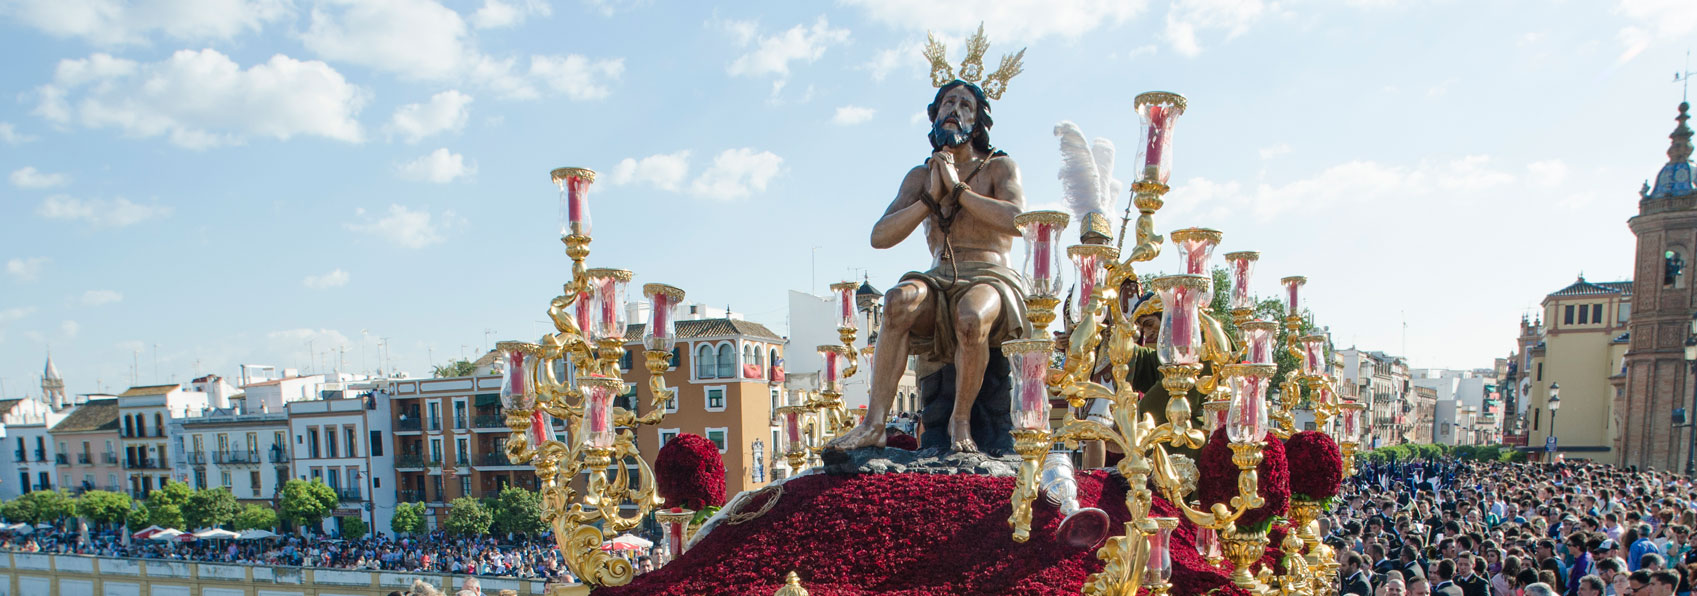 La Semana Santa de Sevilla - Visita Sevilla